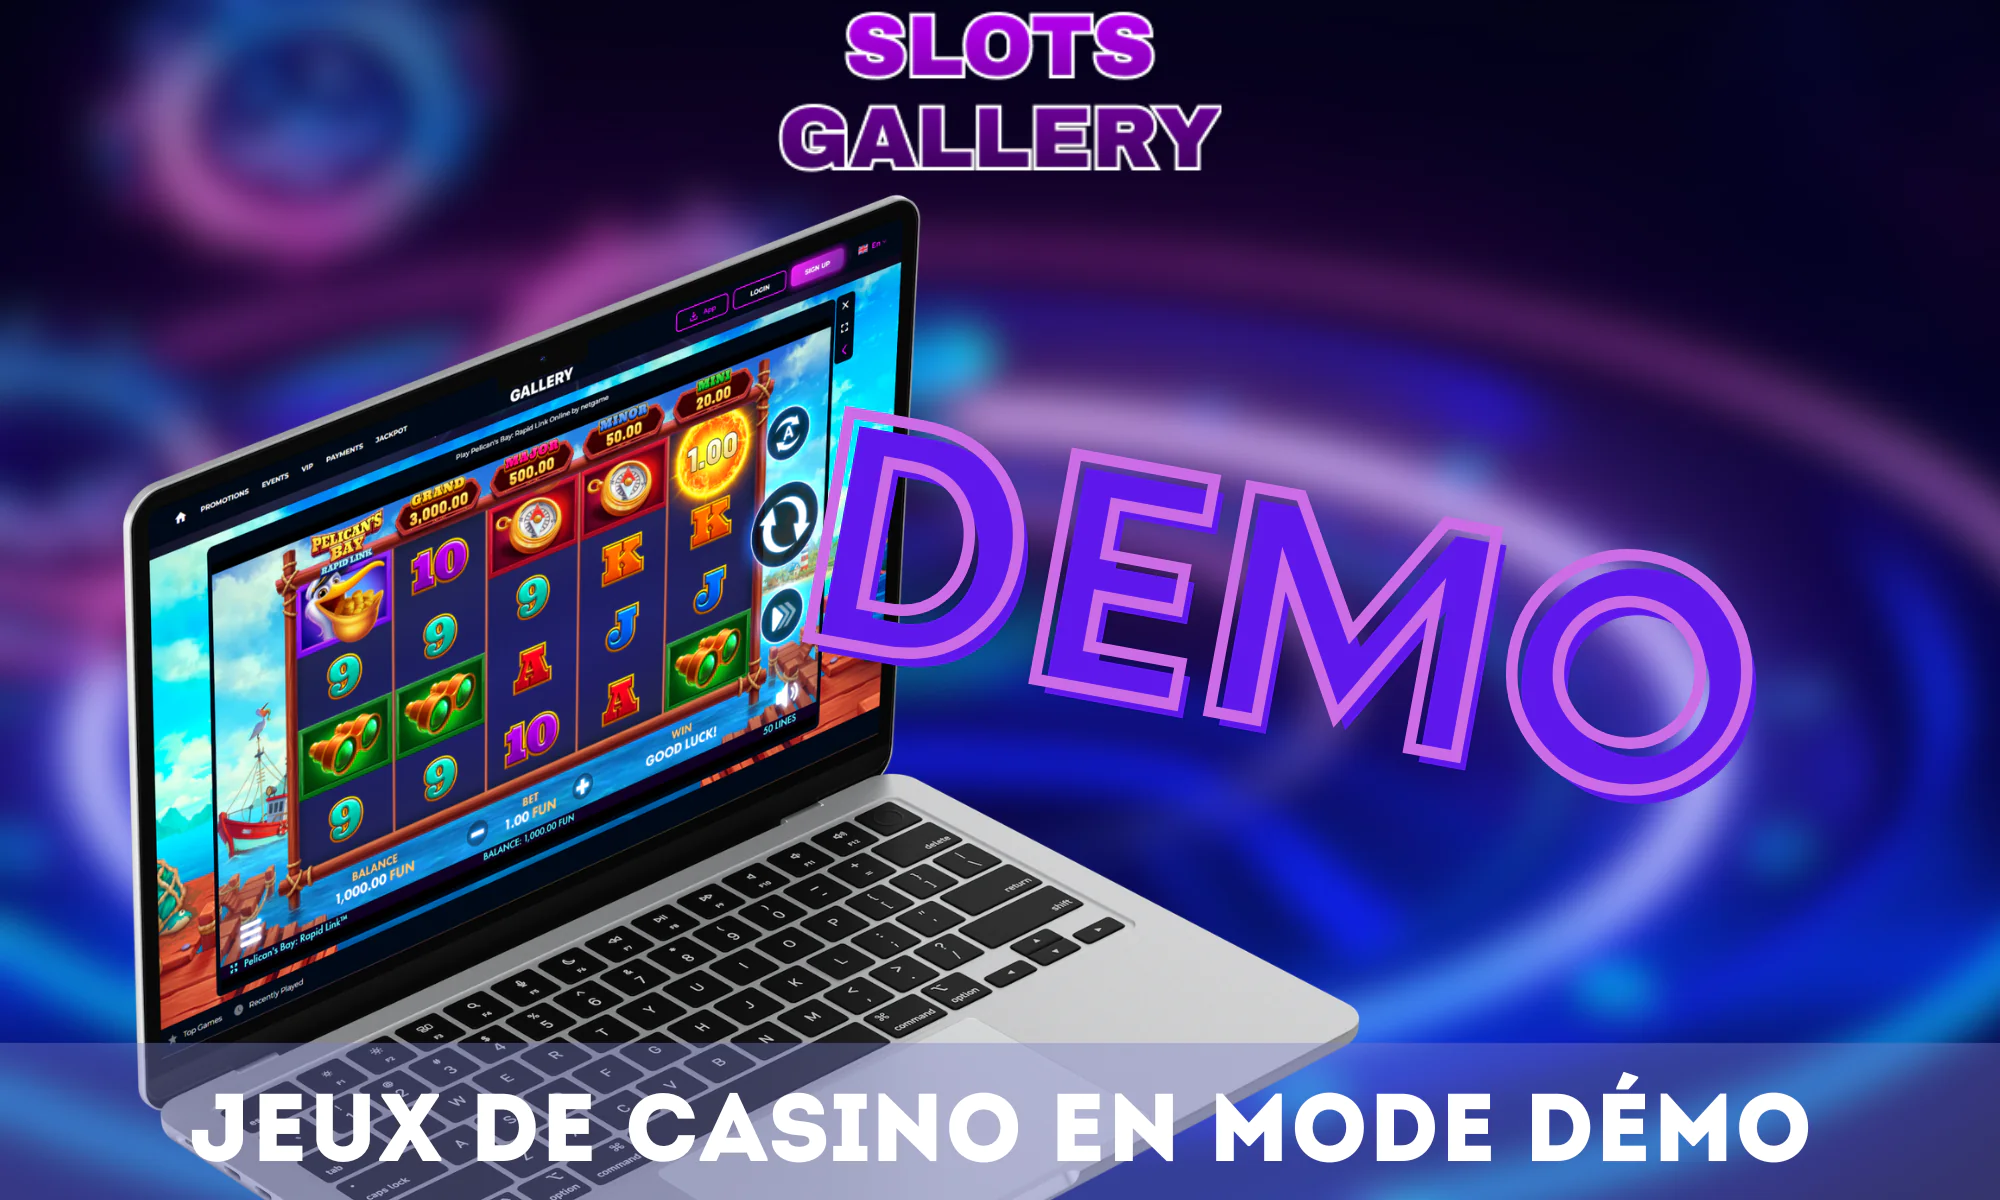 Le casino Slots Gallery répond aux besoins des différents joueurs en proposant un mode démo.